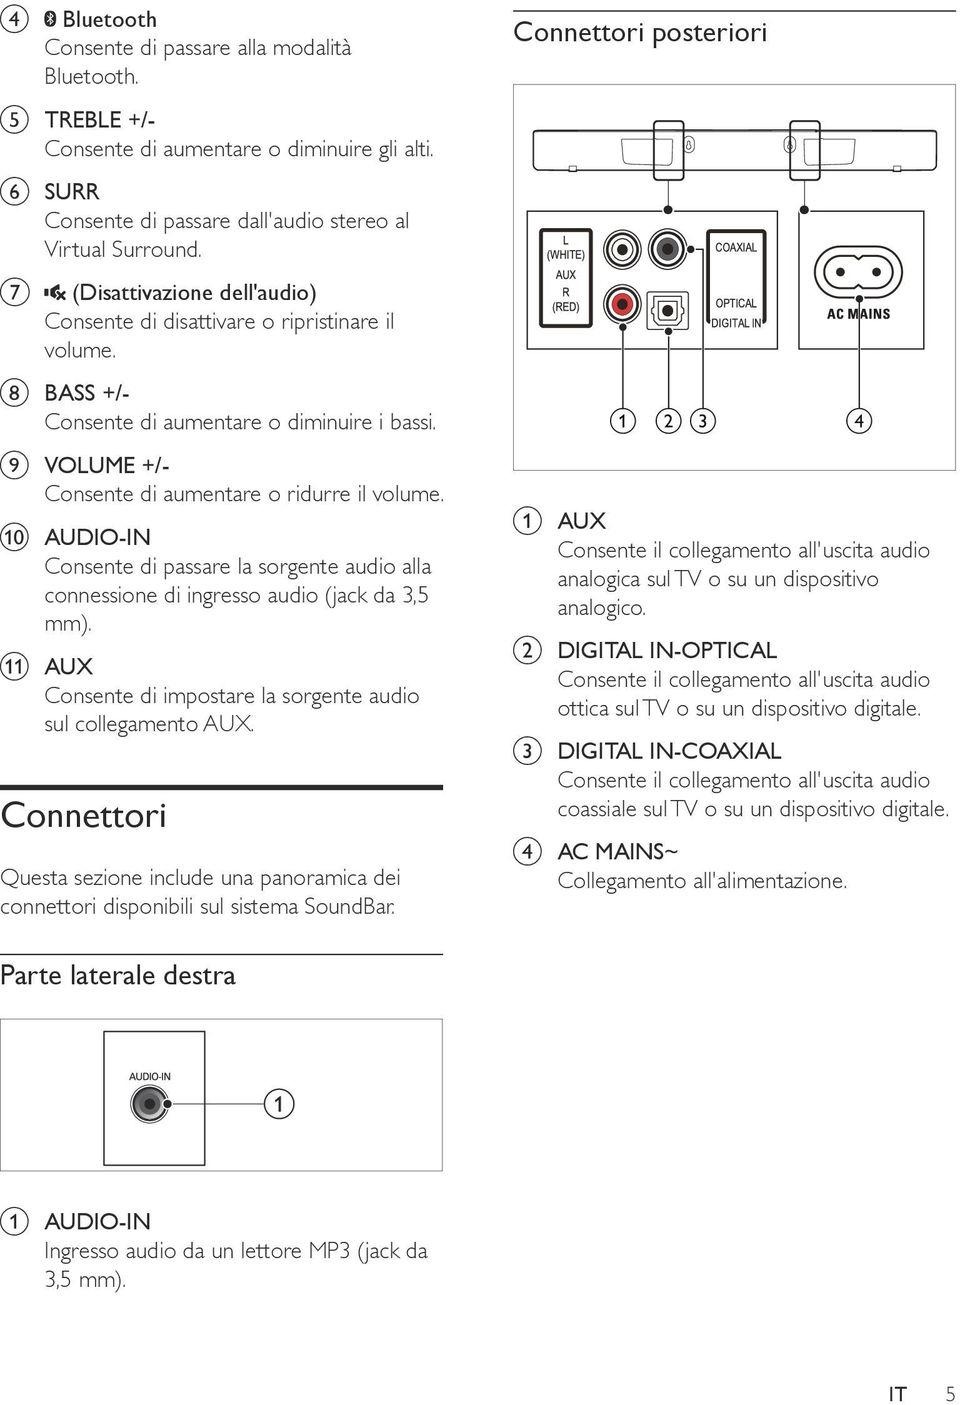 j AUDIO-IN Consente di passare la sorgente audio alla connessione di ingresso audio (jack da 3,5 mm). k AUX Consente di impostare la sorgente audio sul collegamento AUX.